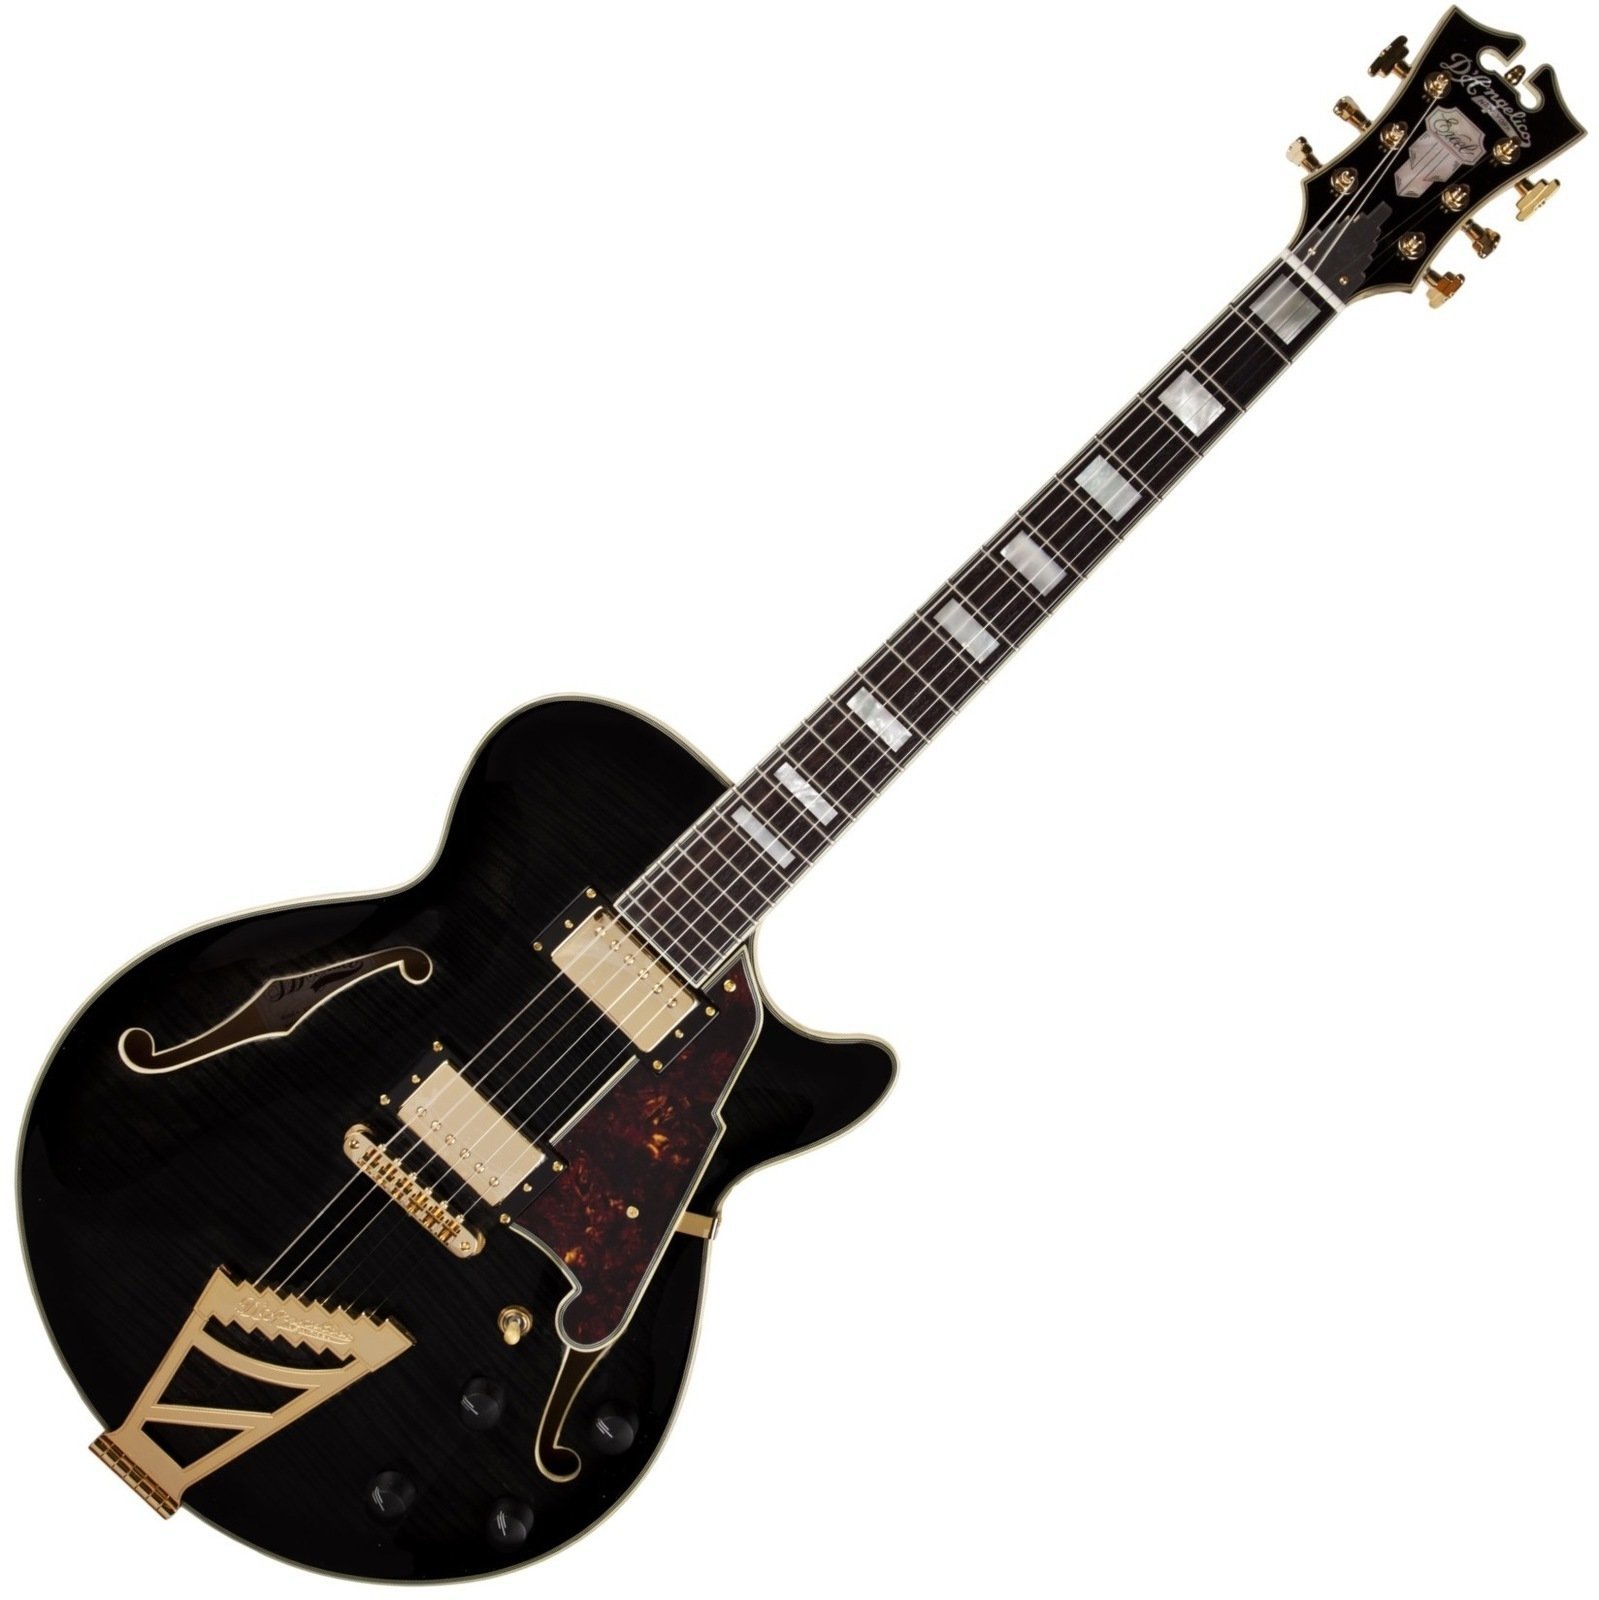 Semiakustická kytara D'Angelico EX-SS Černá